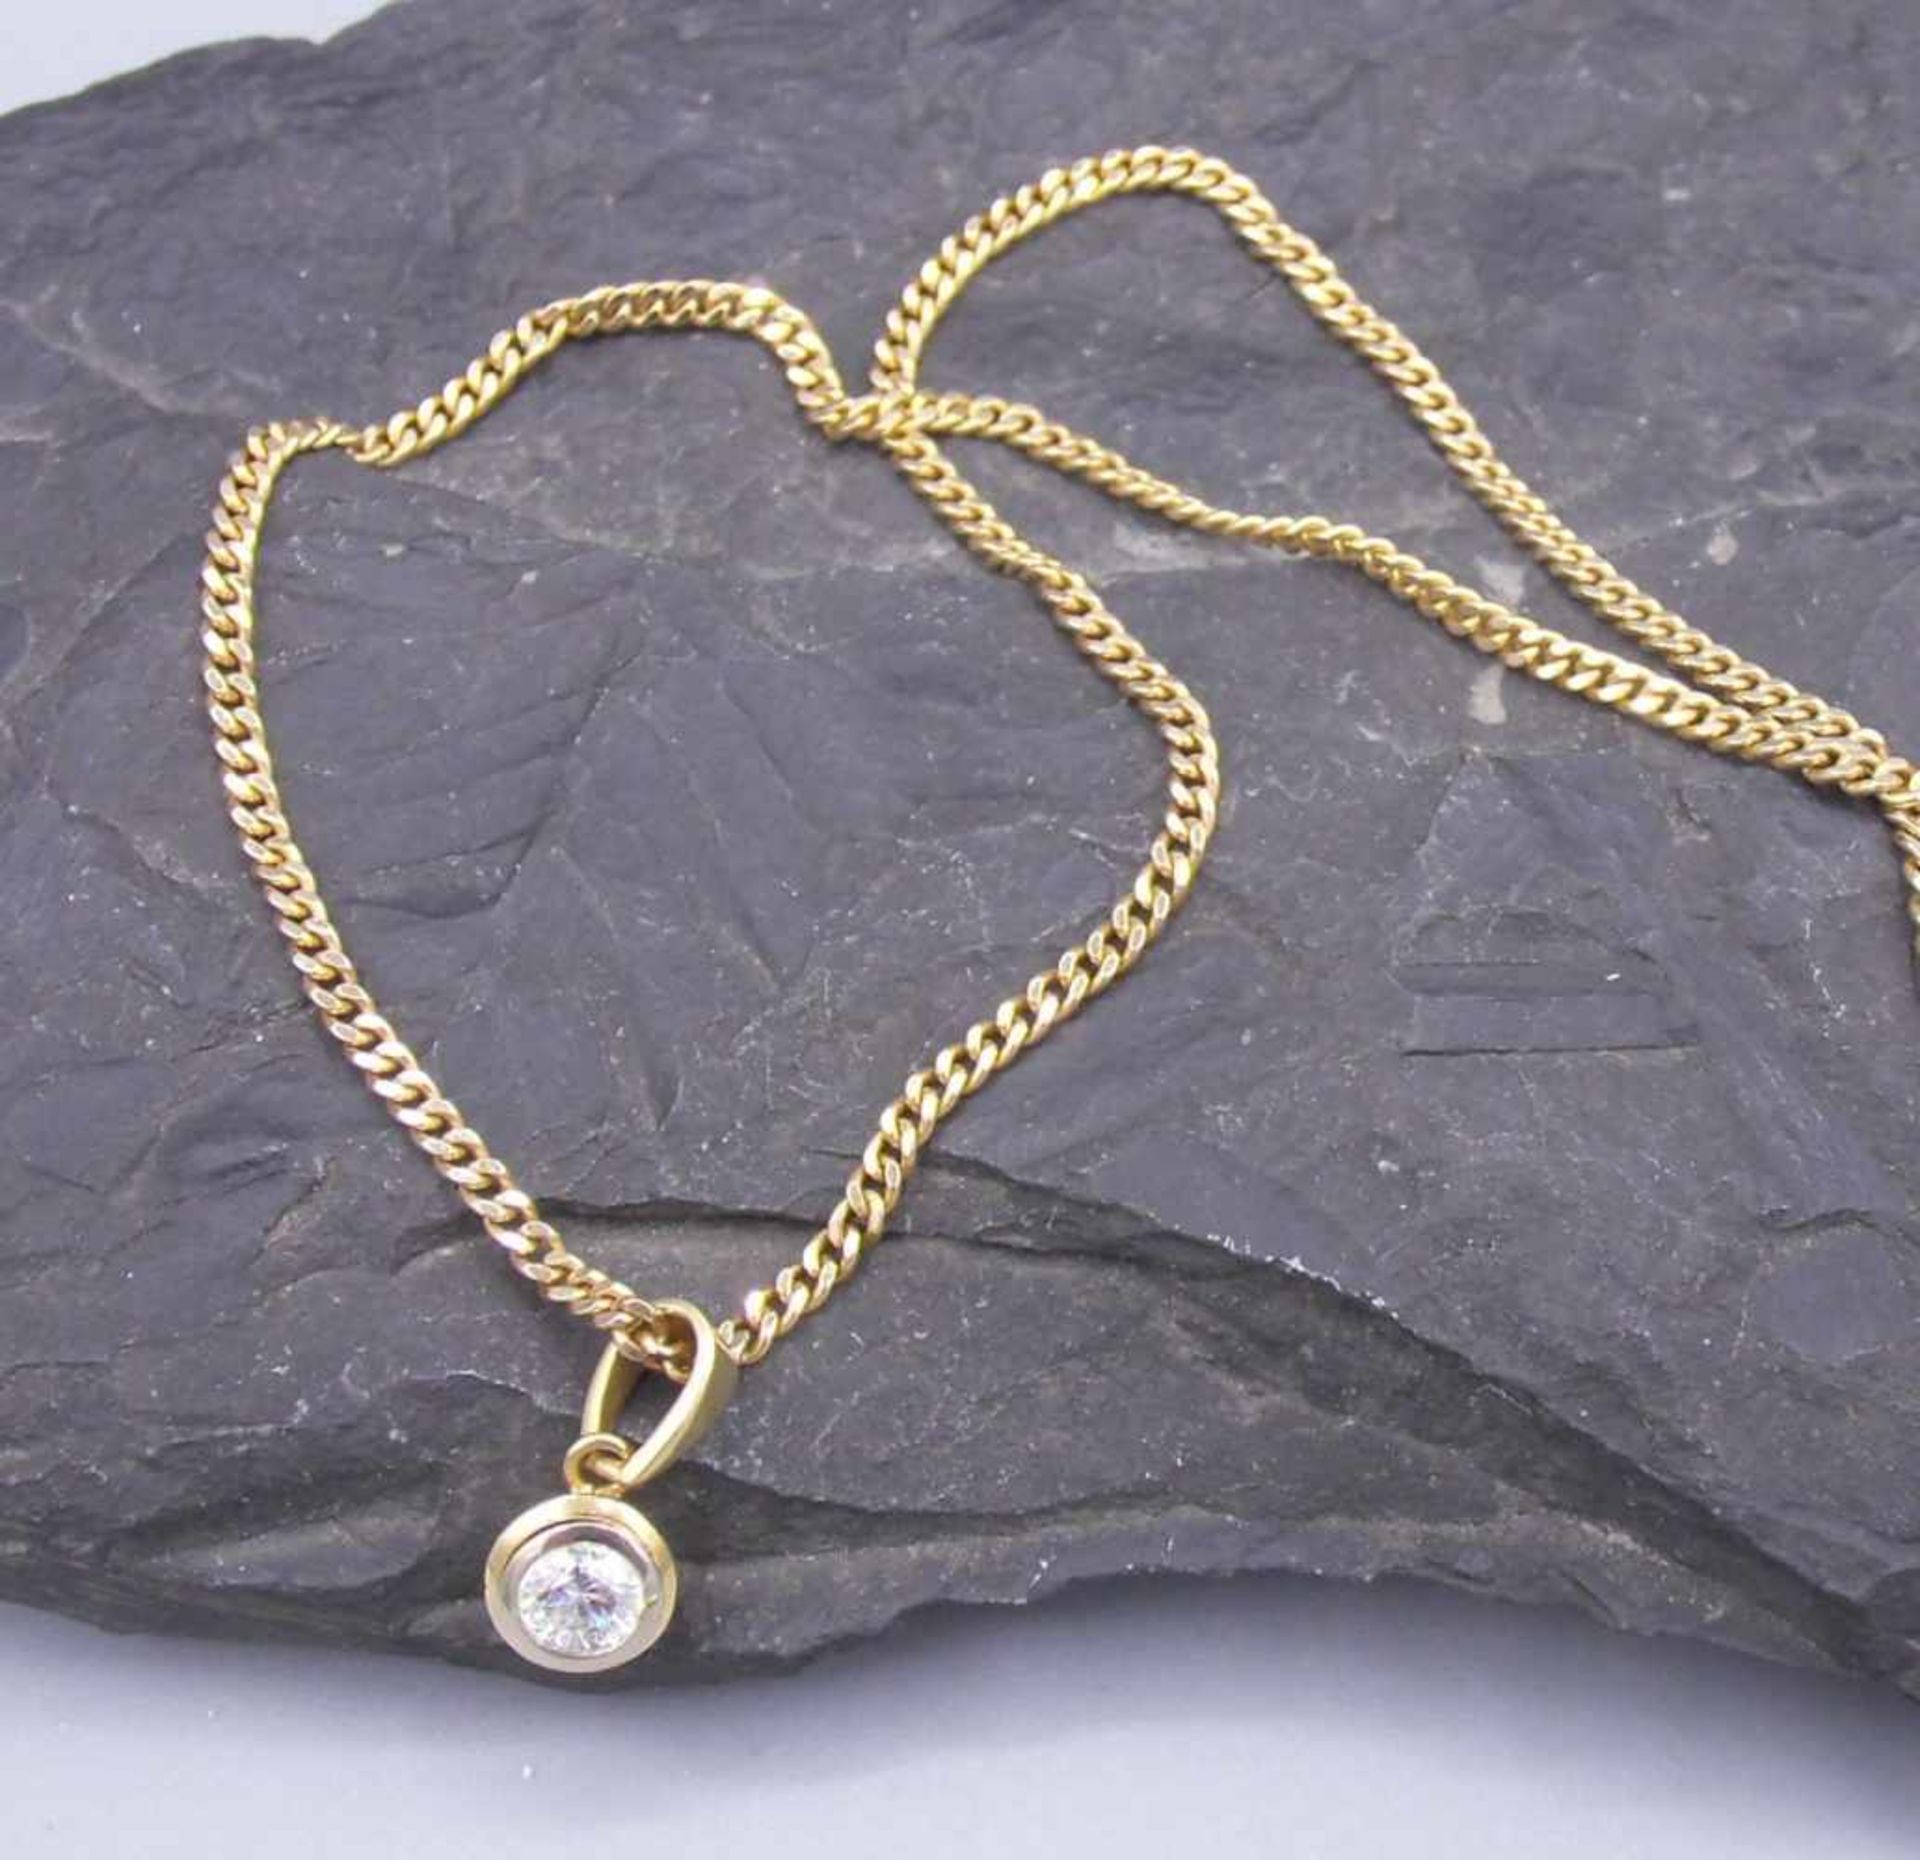 BRILLANT - ANÄNGER AN PANZERKETTE / pendant and necklace, beides 585er Gelbgold (insgesamt 7,5 g);